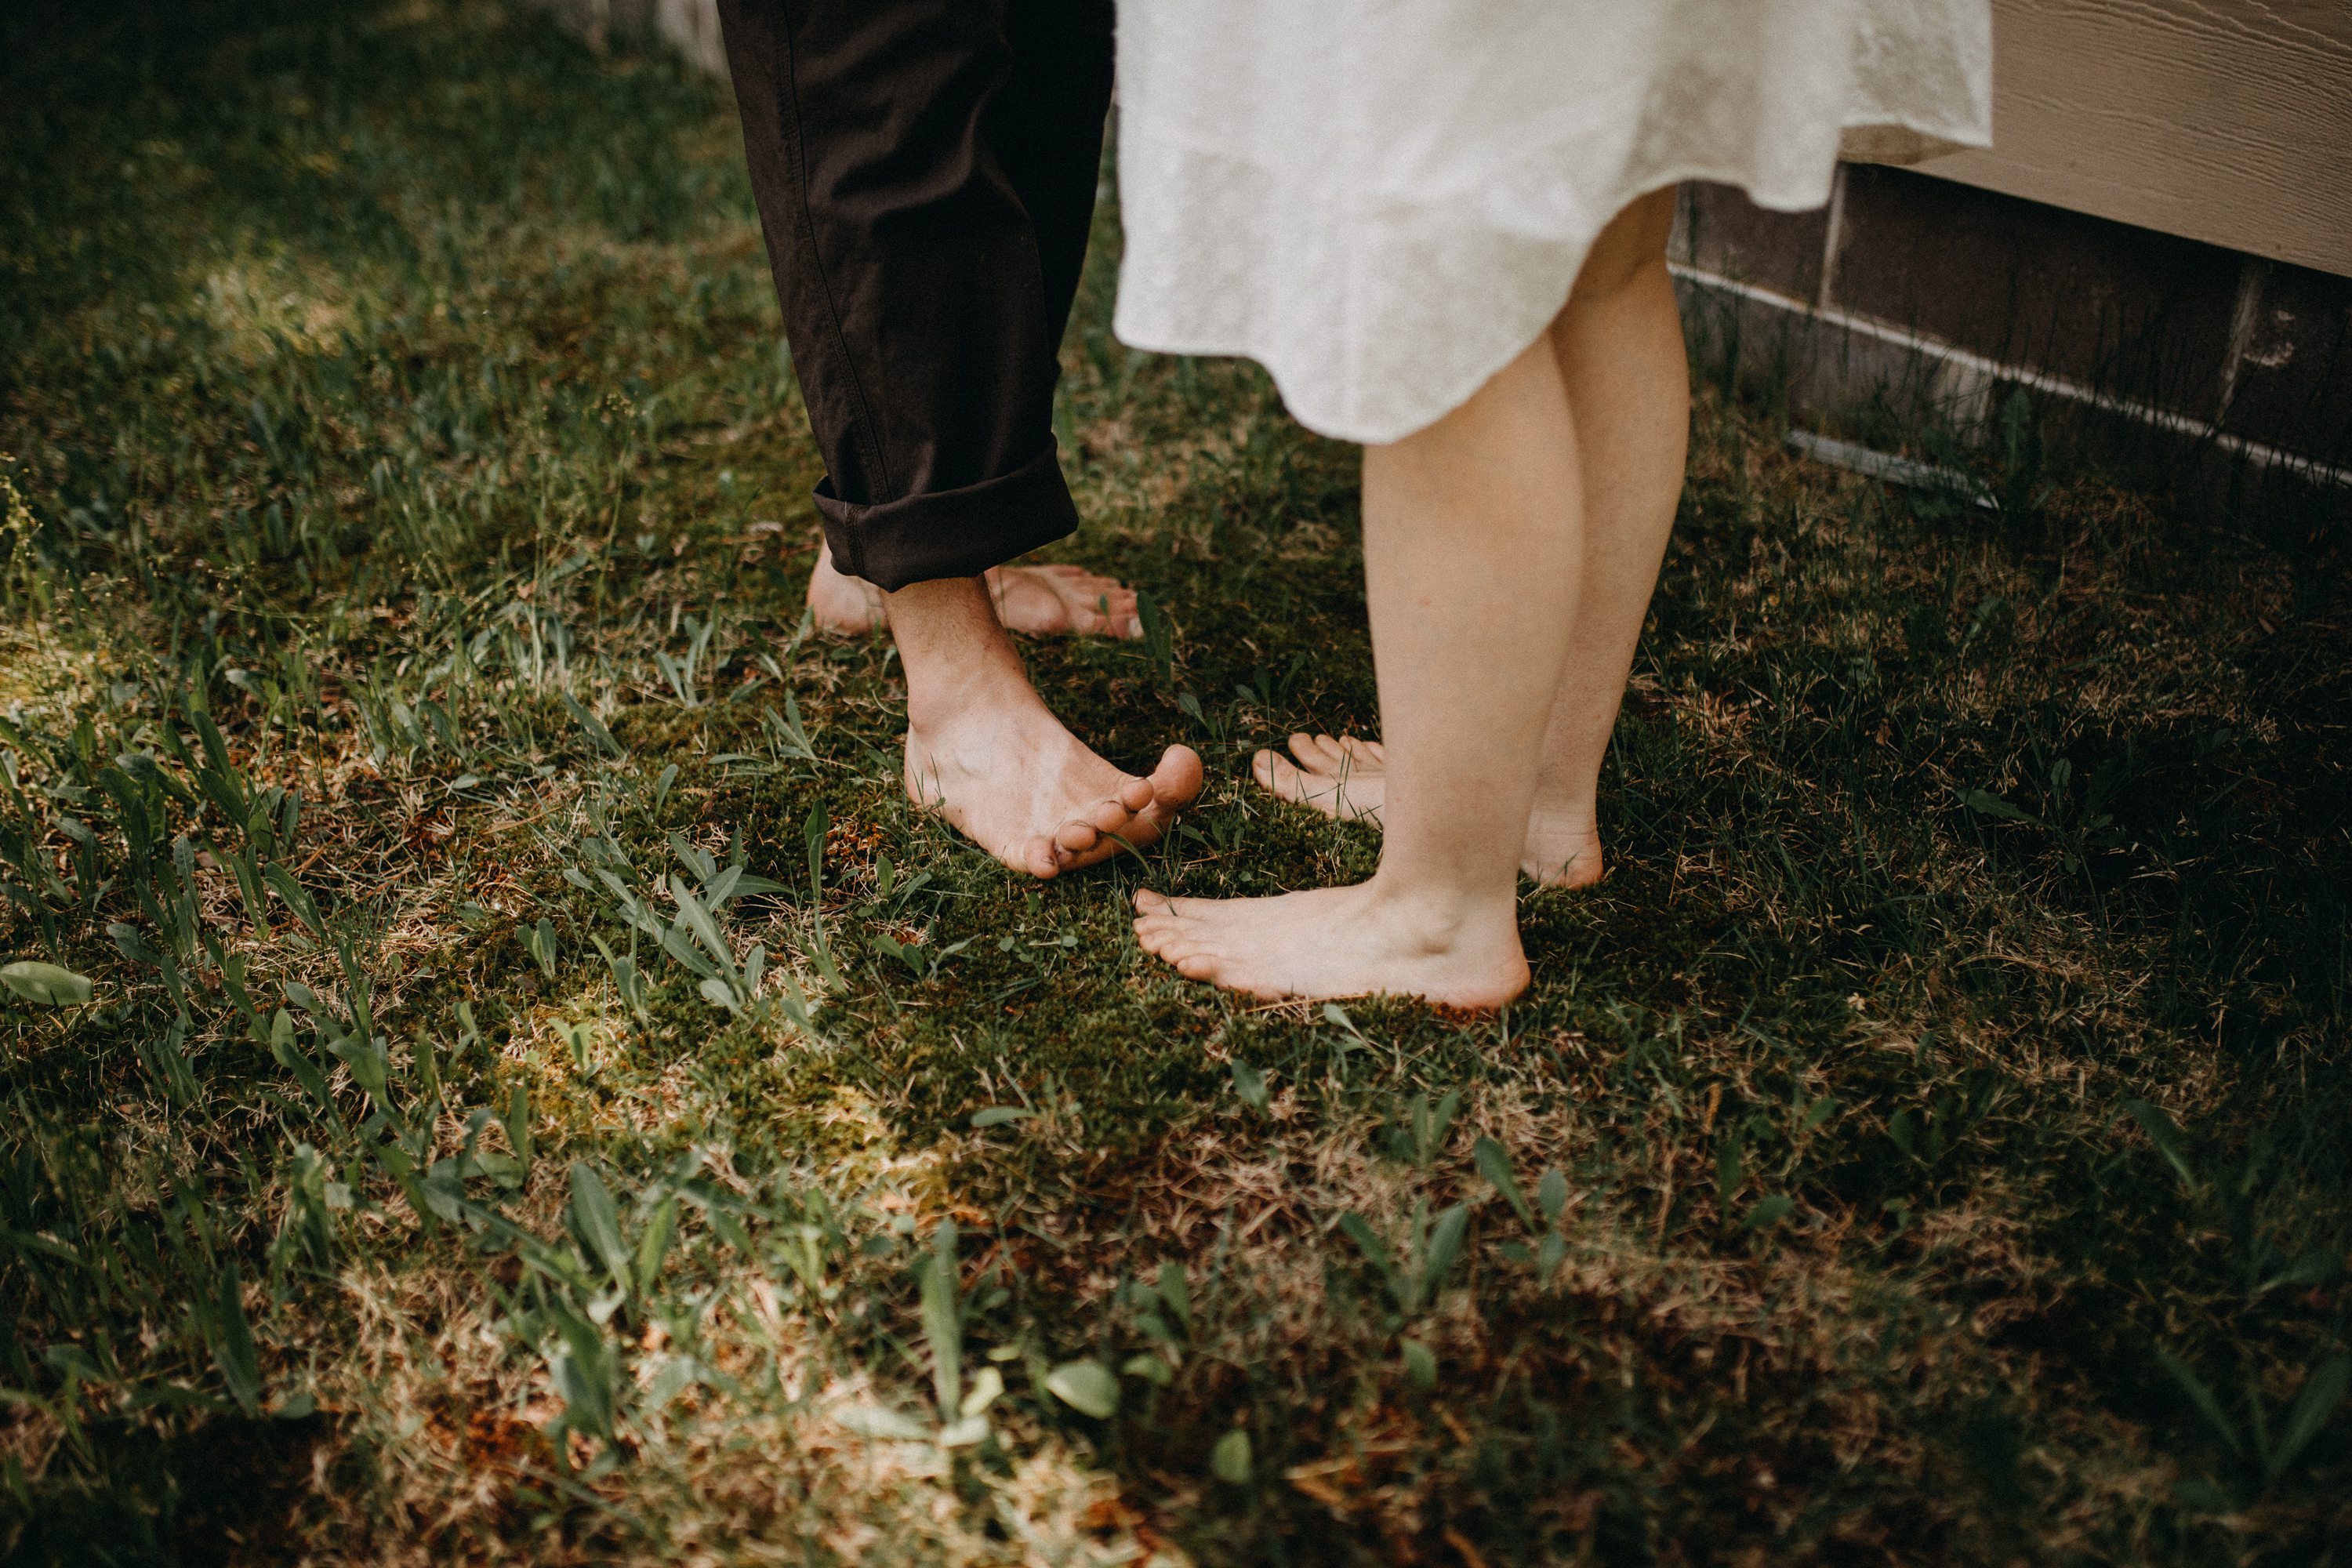 lake wedding,backyard wedding,barefoot wedding,intimate wedding,duluth mn wedding